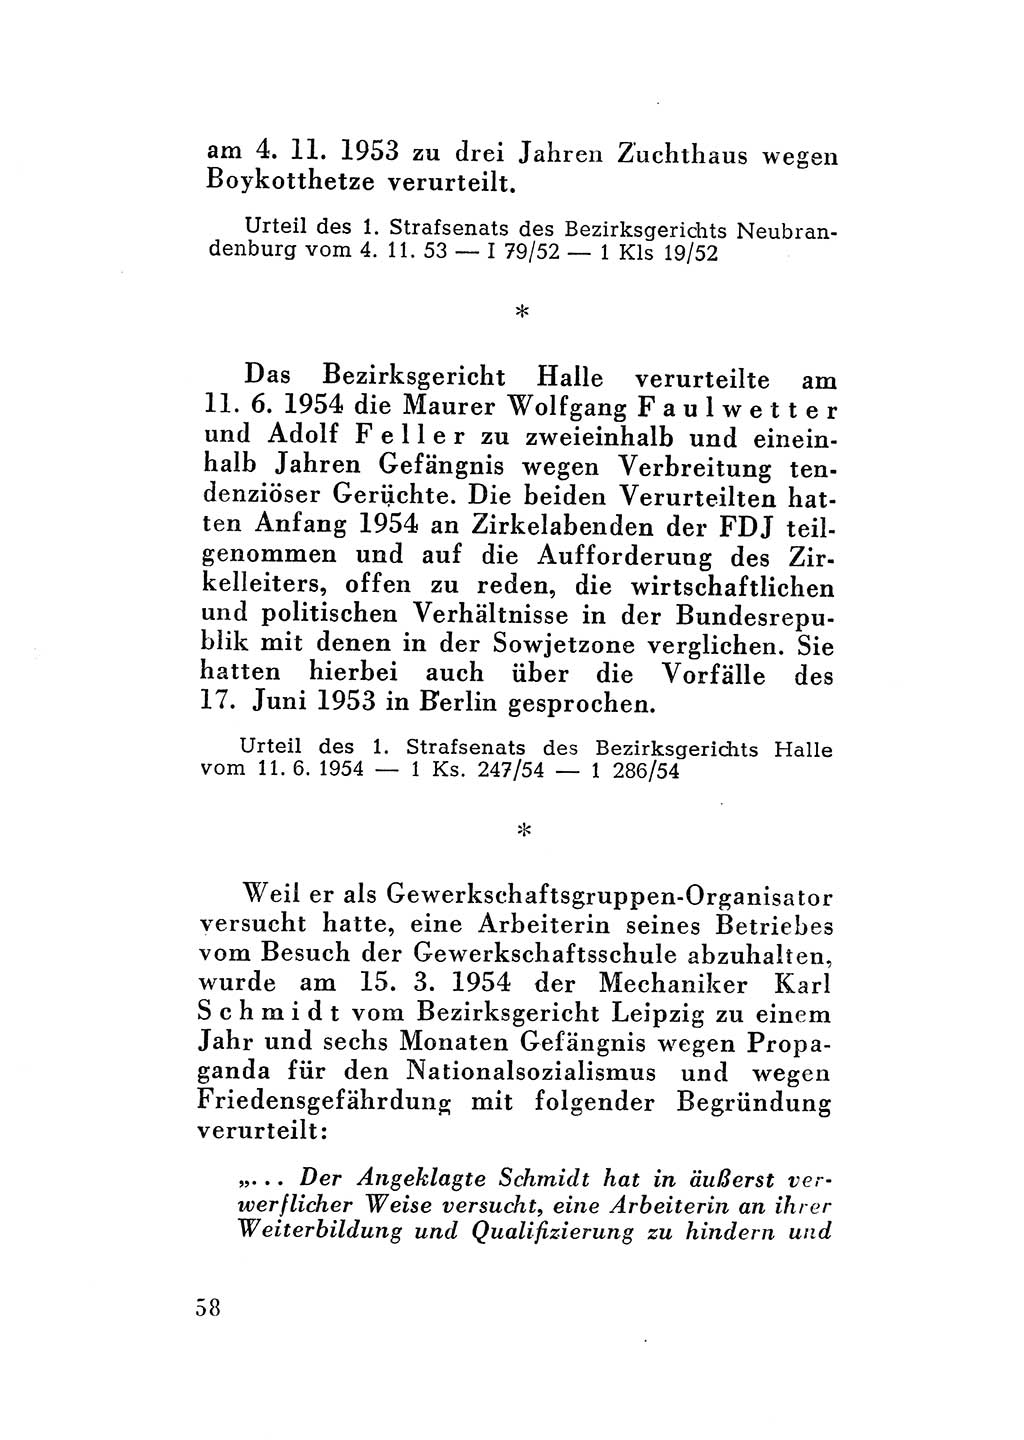 Katalog des Unrechts, Untersuchungsausschuß Freiheitlicher Juristen (UfJ) [Bundesrepublik Deutschland (BRD)] 1956, Seite 58 (Kat. UnR. UfJ BRD 1956, S. 58)